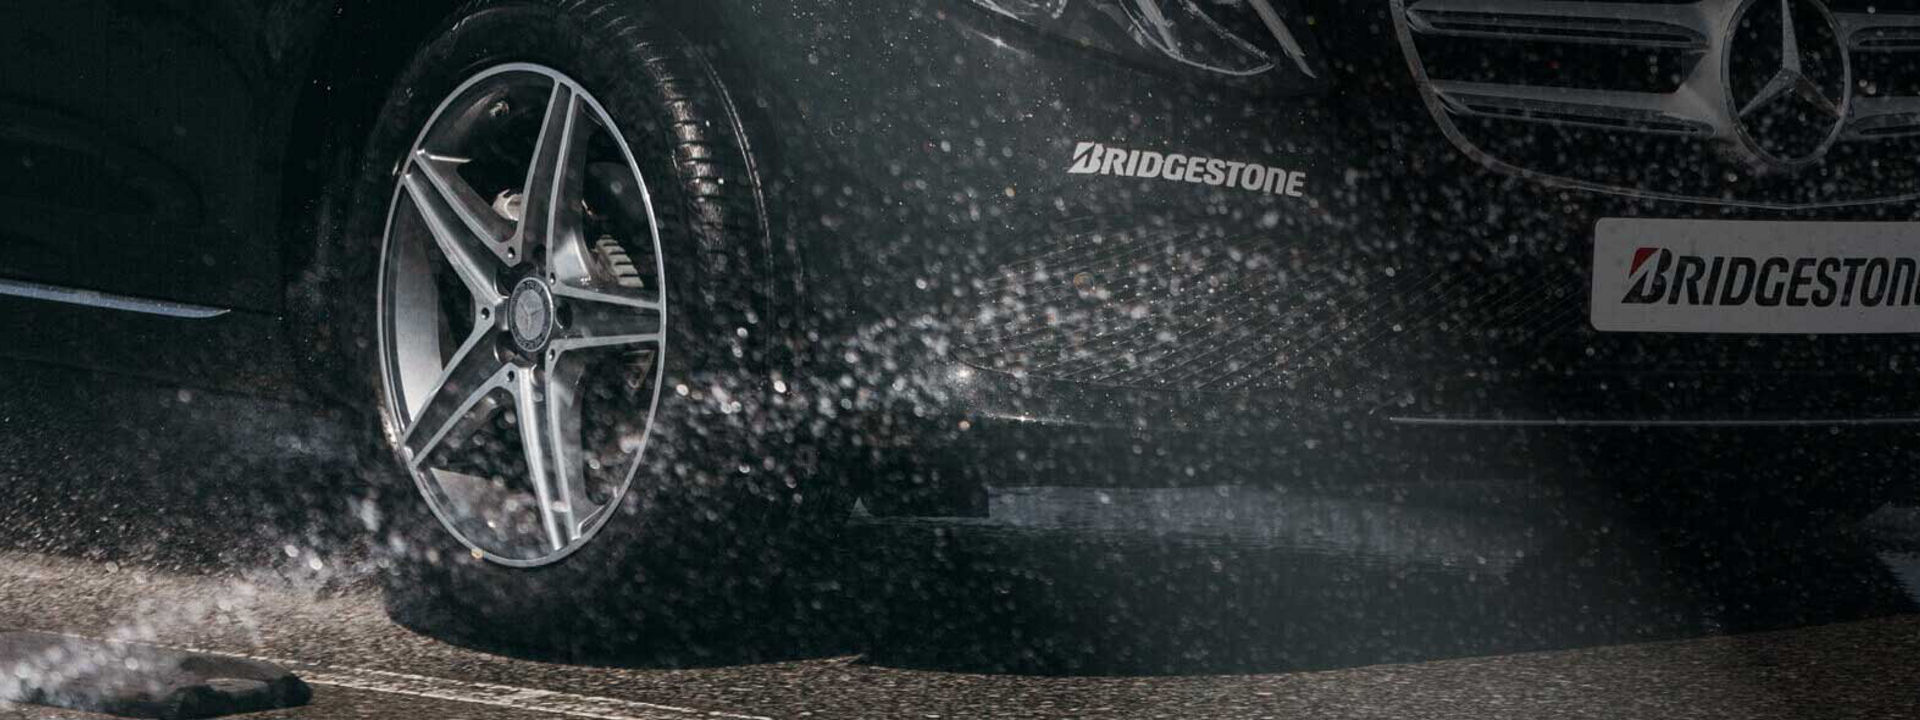 Esta imagem é um grande plano de um pneu Turanza da Bridgestone a rodar em pisomolhado